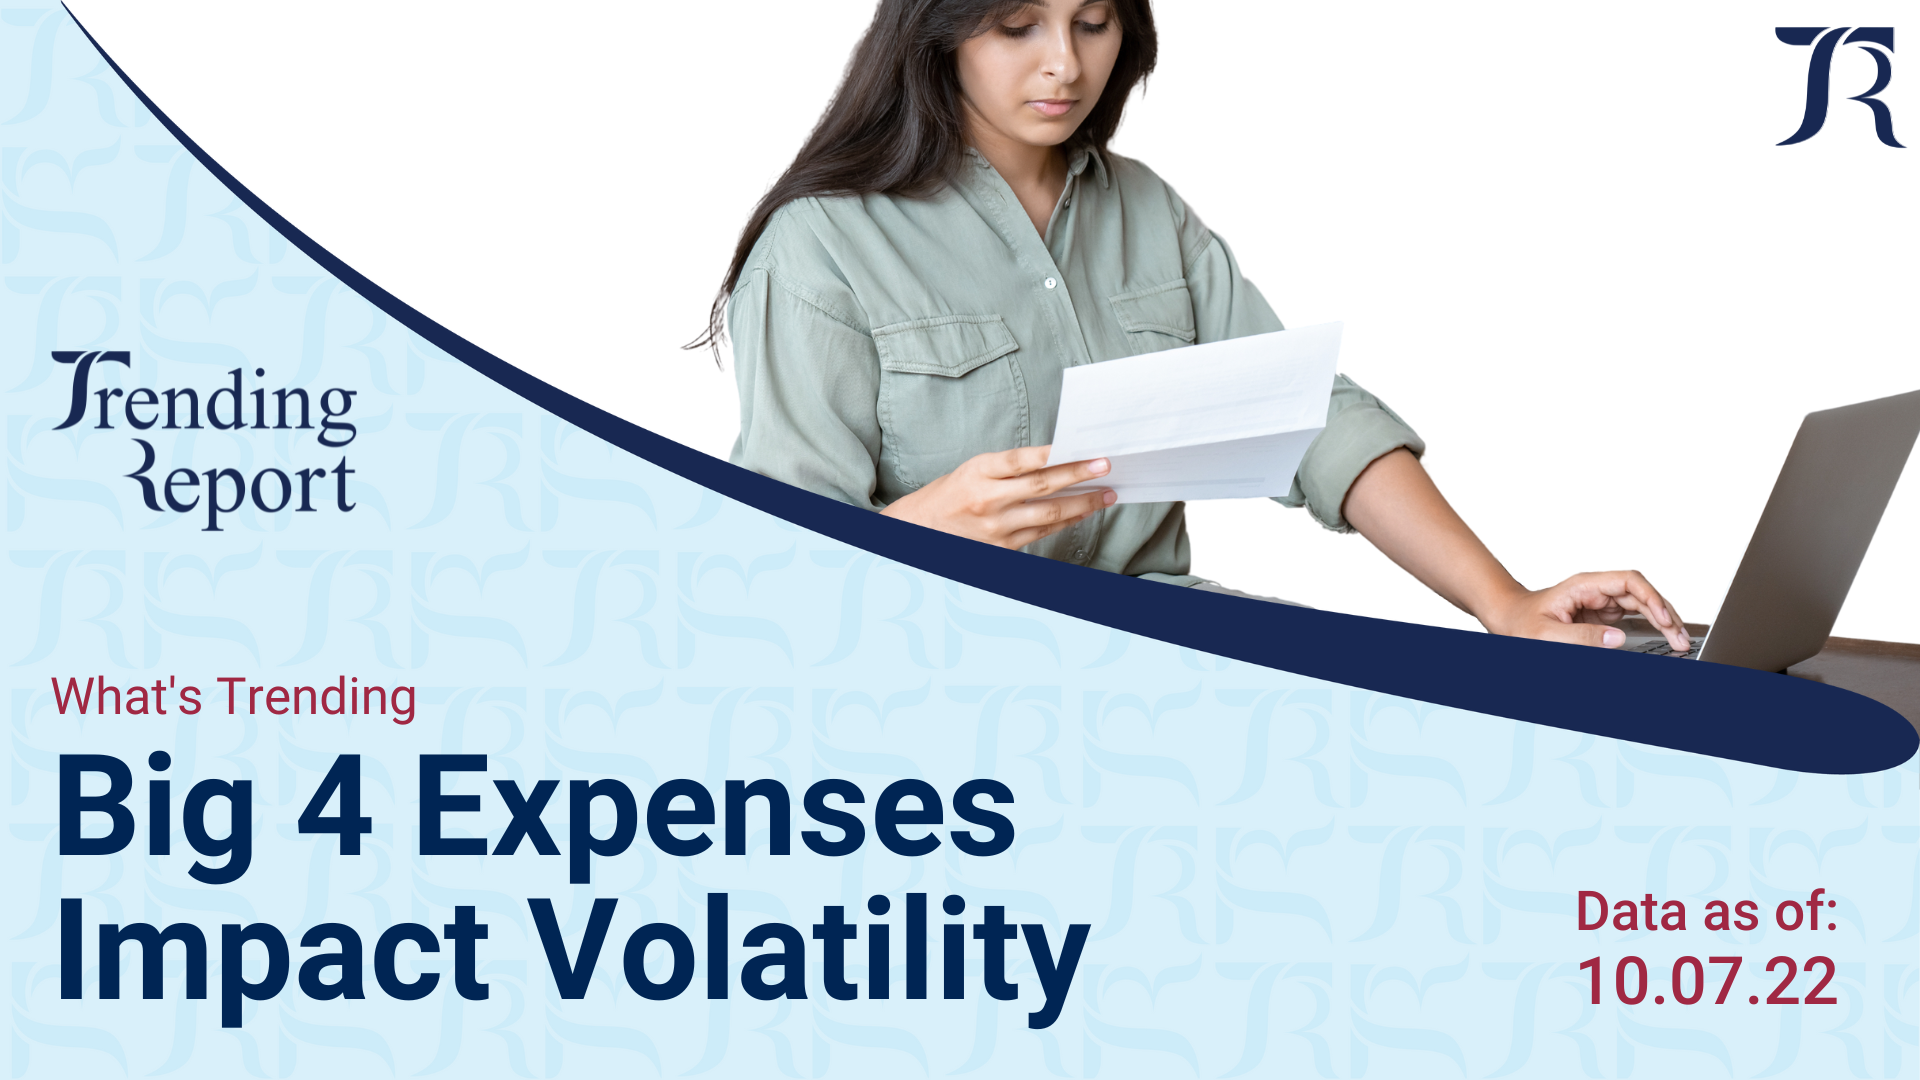 What's Trending: Big 4 Expenses Impact Volatility